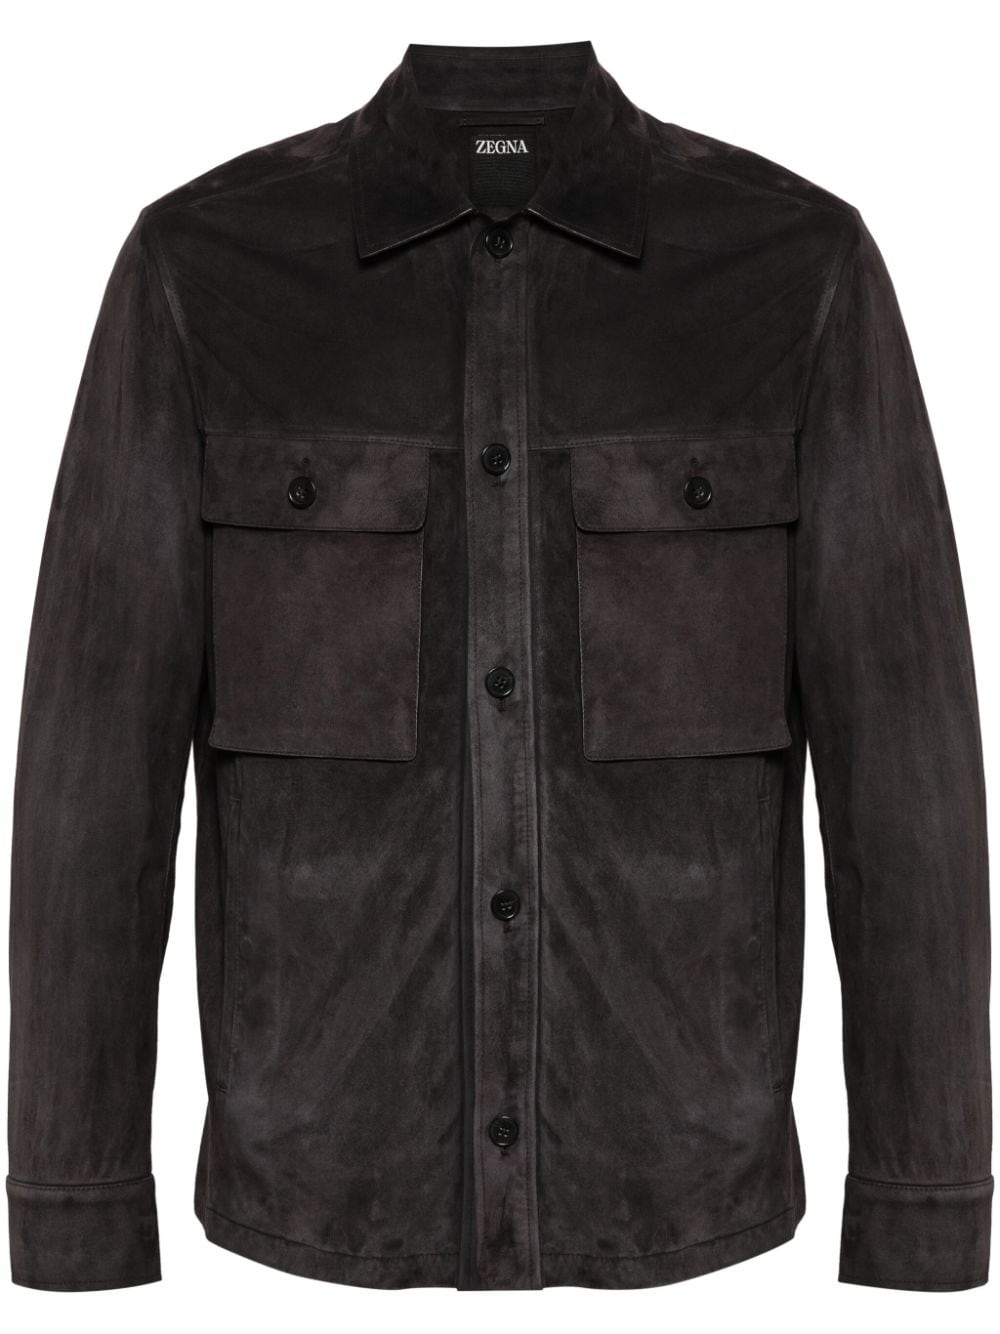 Zegna zip-up shirt jacket - Brown von Zegna